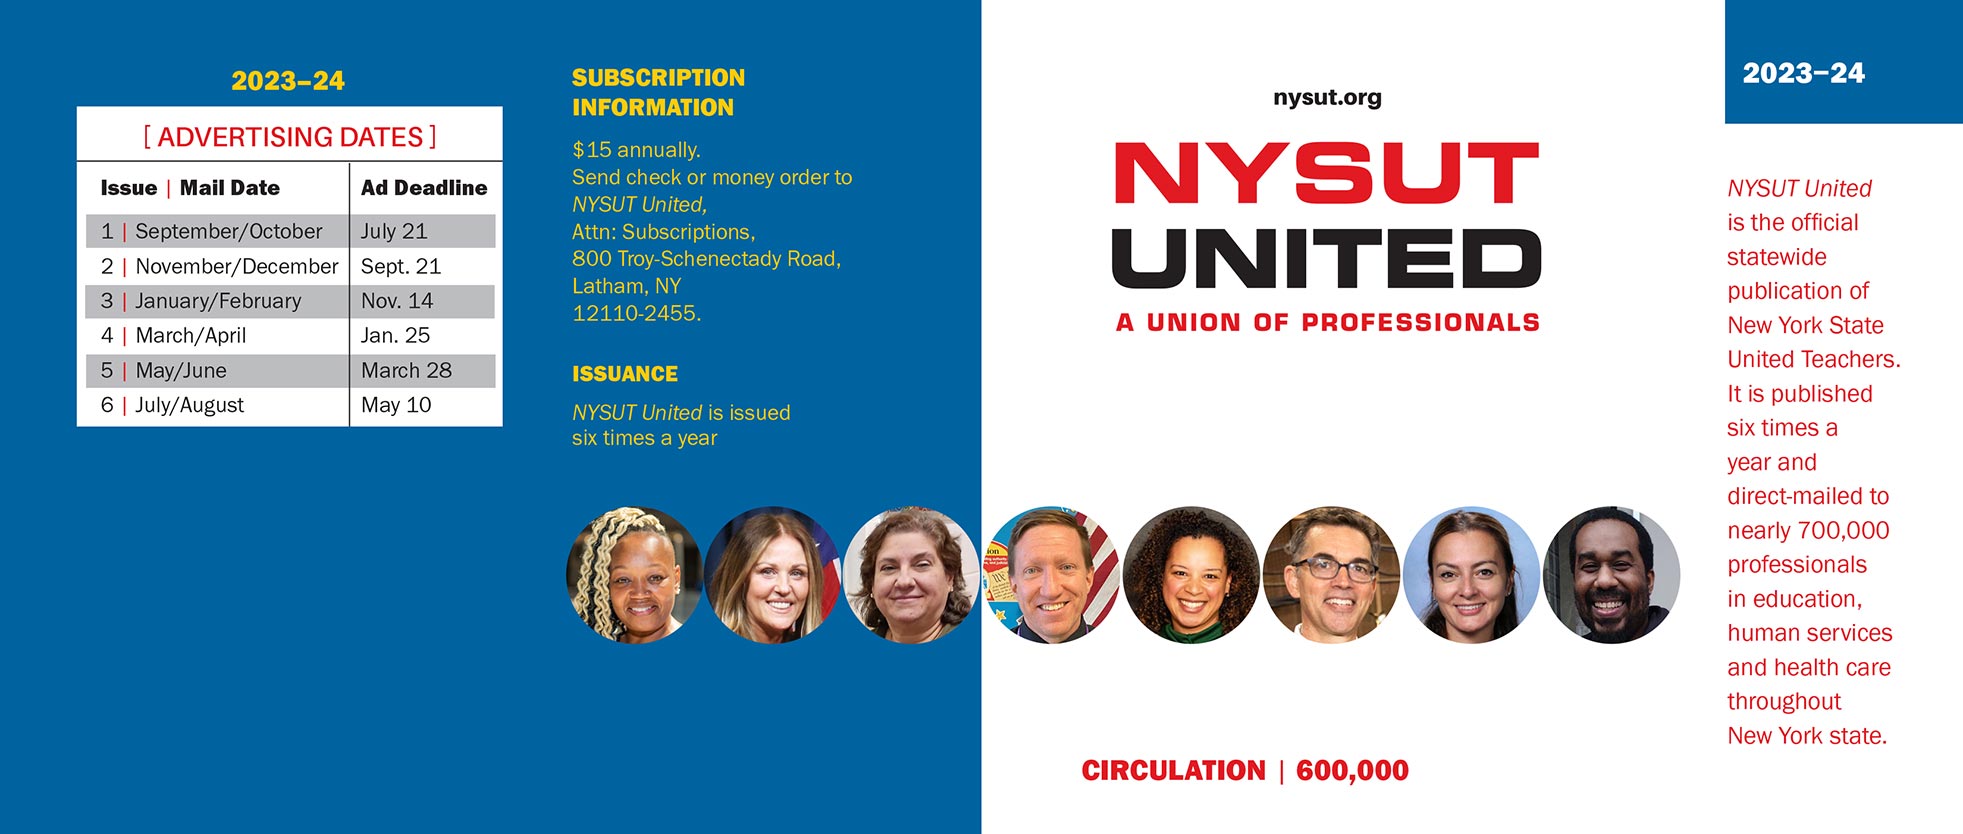 NYSUT United Media Kit